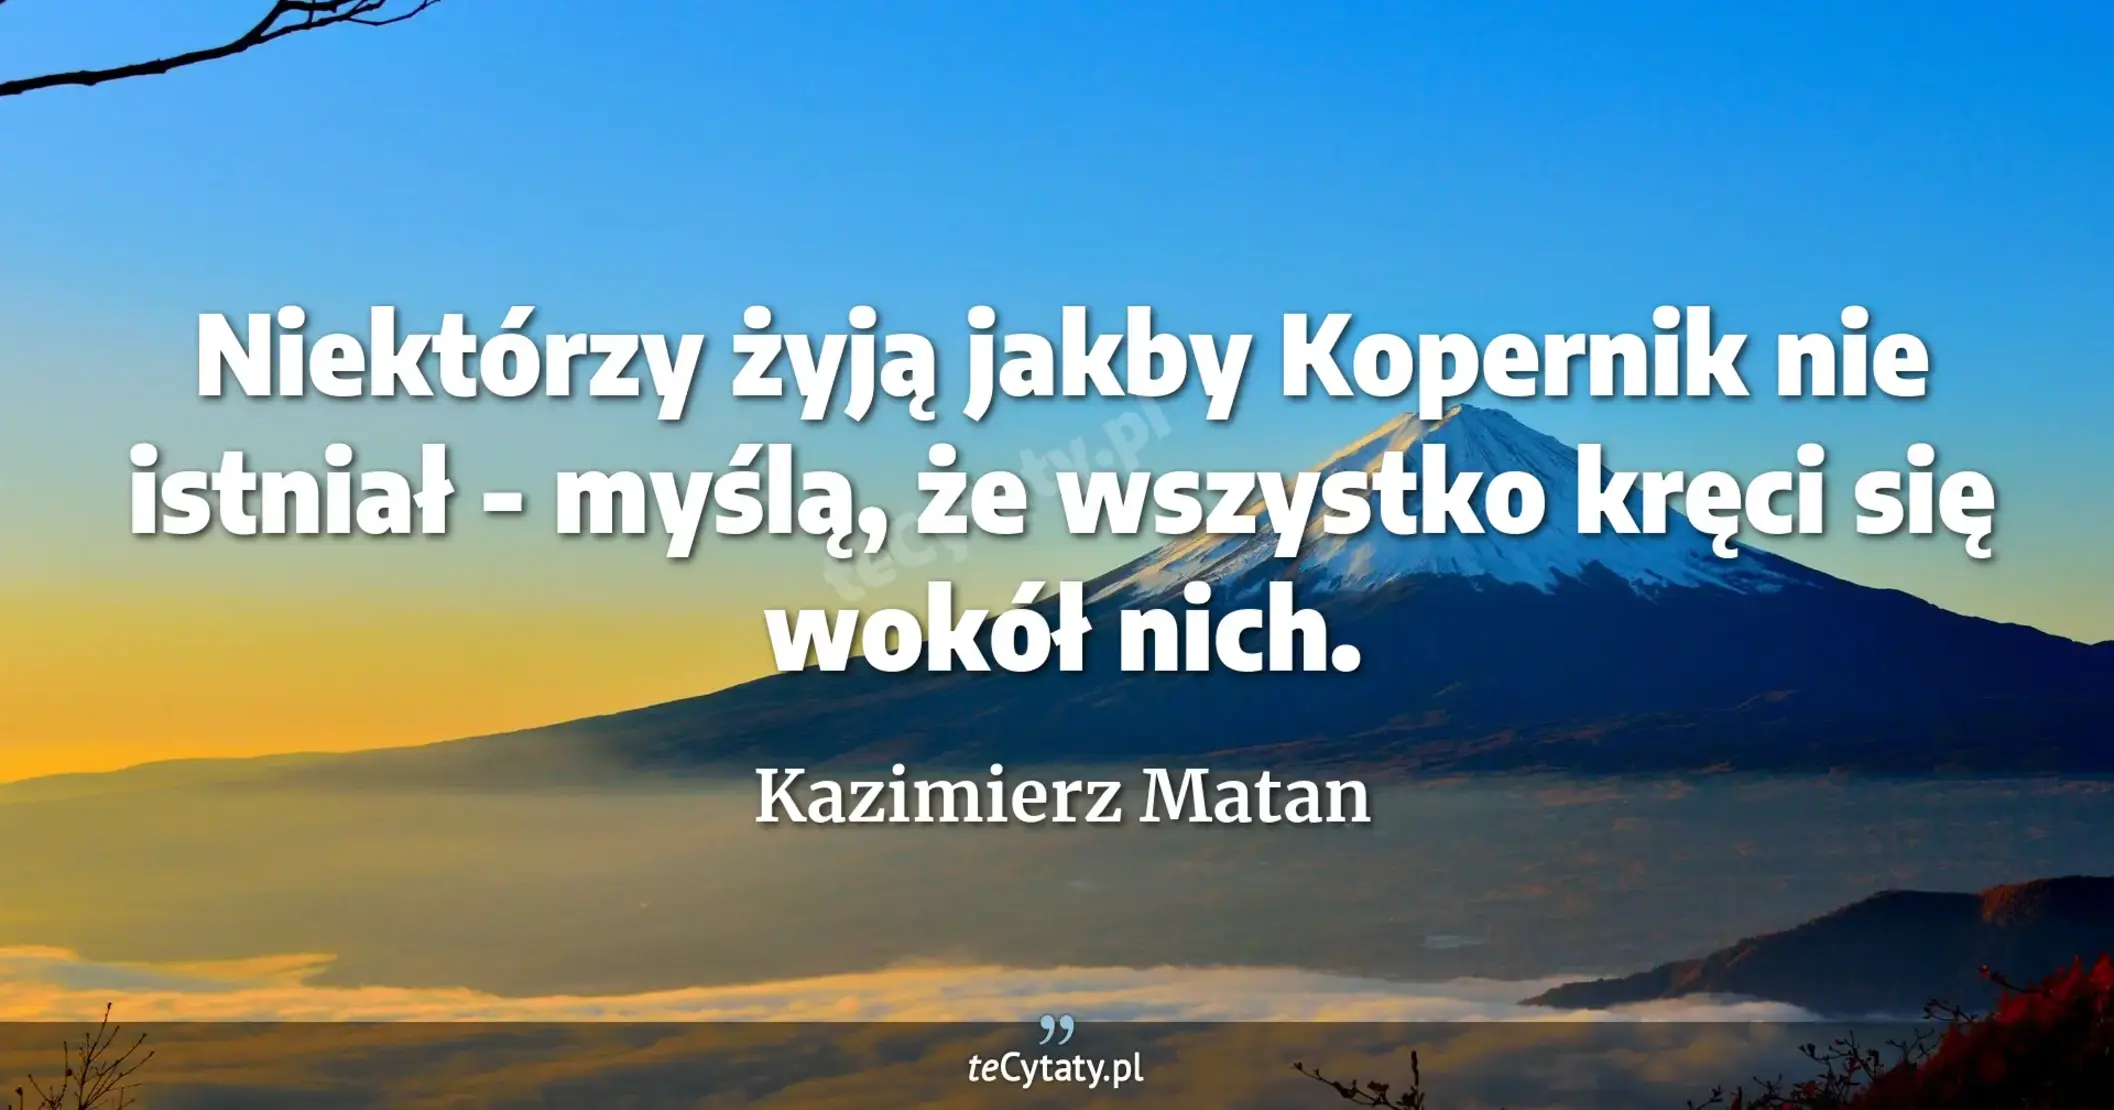 Niektórzy żyją jakby Kopernik nie istniał - myślą, że wszystko kręci się wokół nich. - Kazimierz Matan